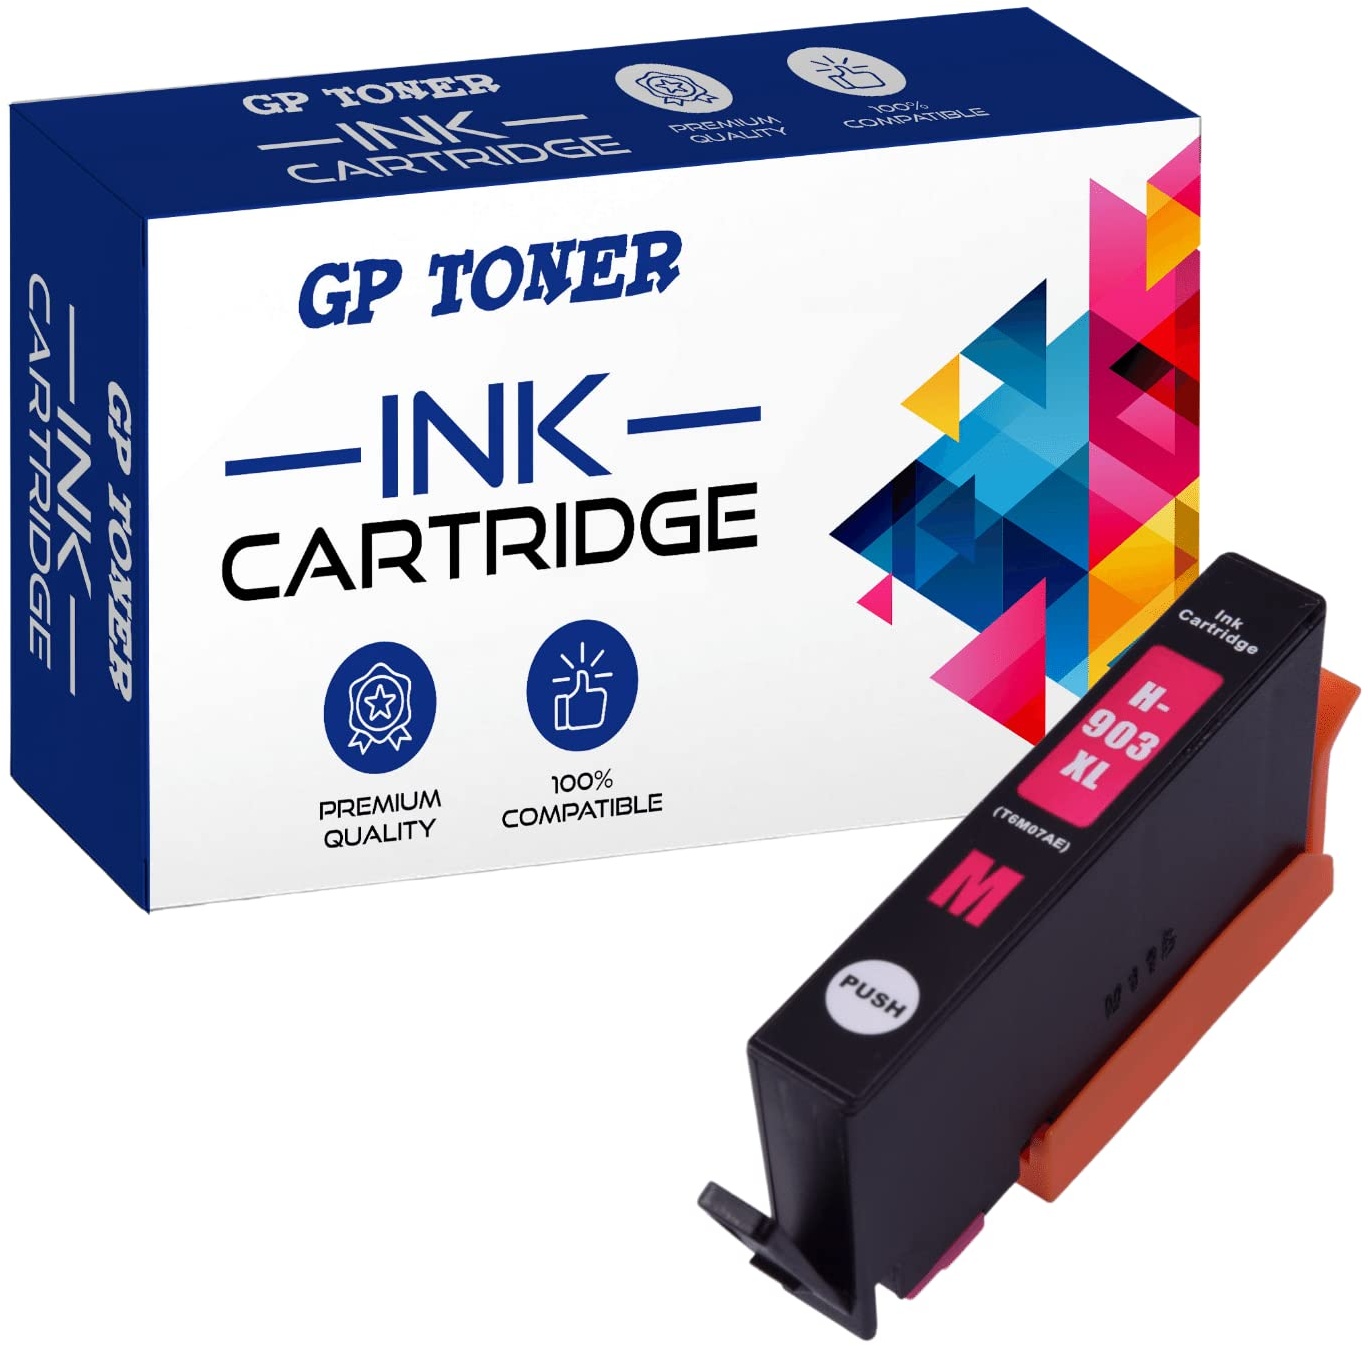 GP TONER Kompatibel Tintenpatrone als Ersatz für HP 903XL 903 XL Multipack Druckerpatronen für HP Officejet 6950 Pro 6970 6760 6978 6979 6965 6968 (Schwarz, Cyan, Magenta, Gelb)